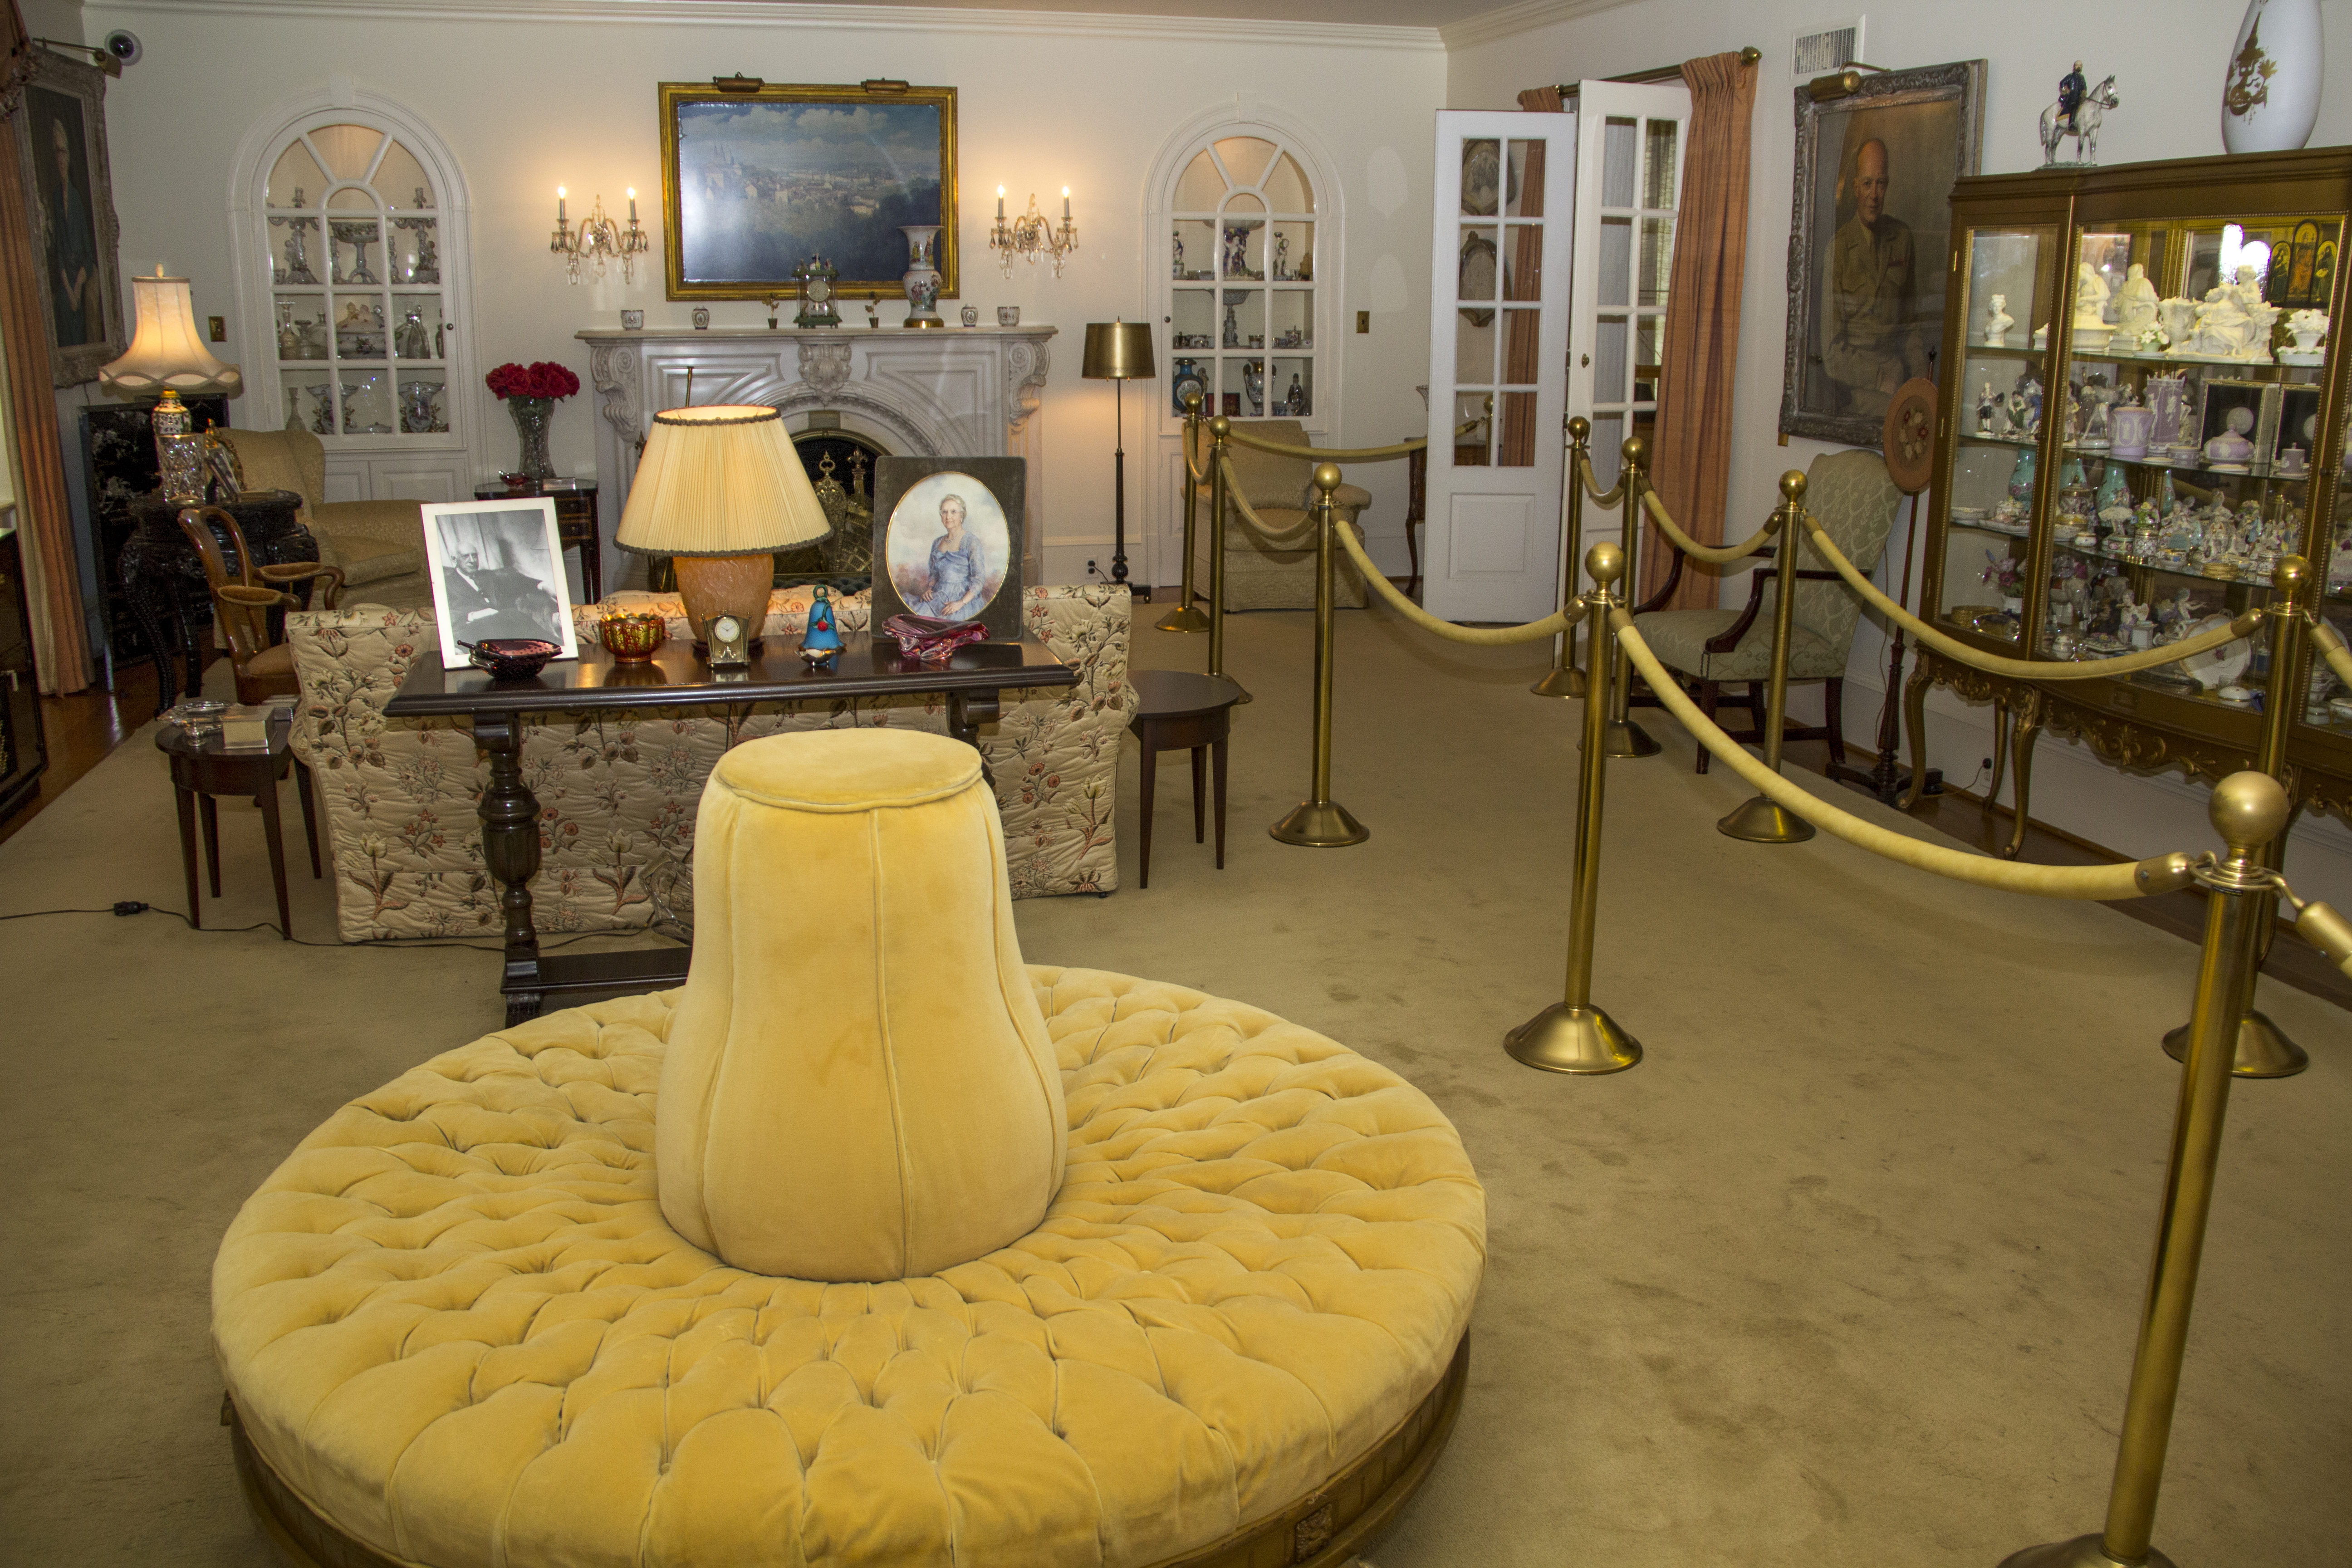 The Eisenhower living room